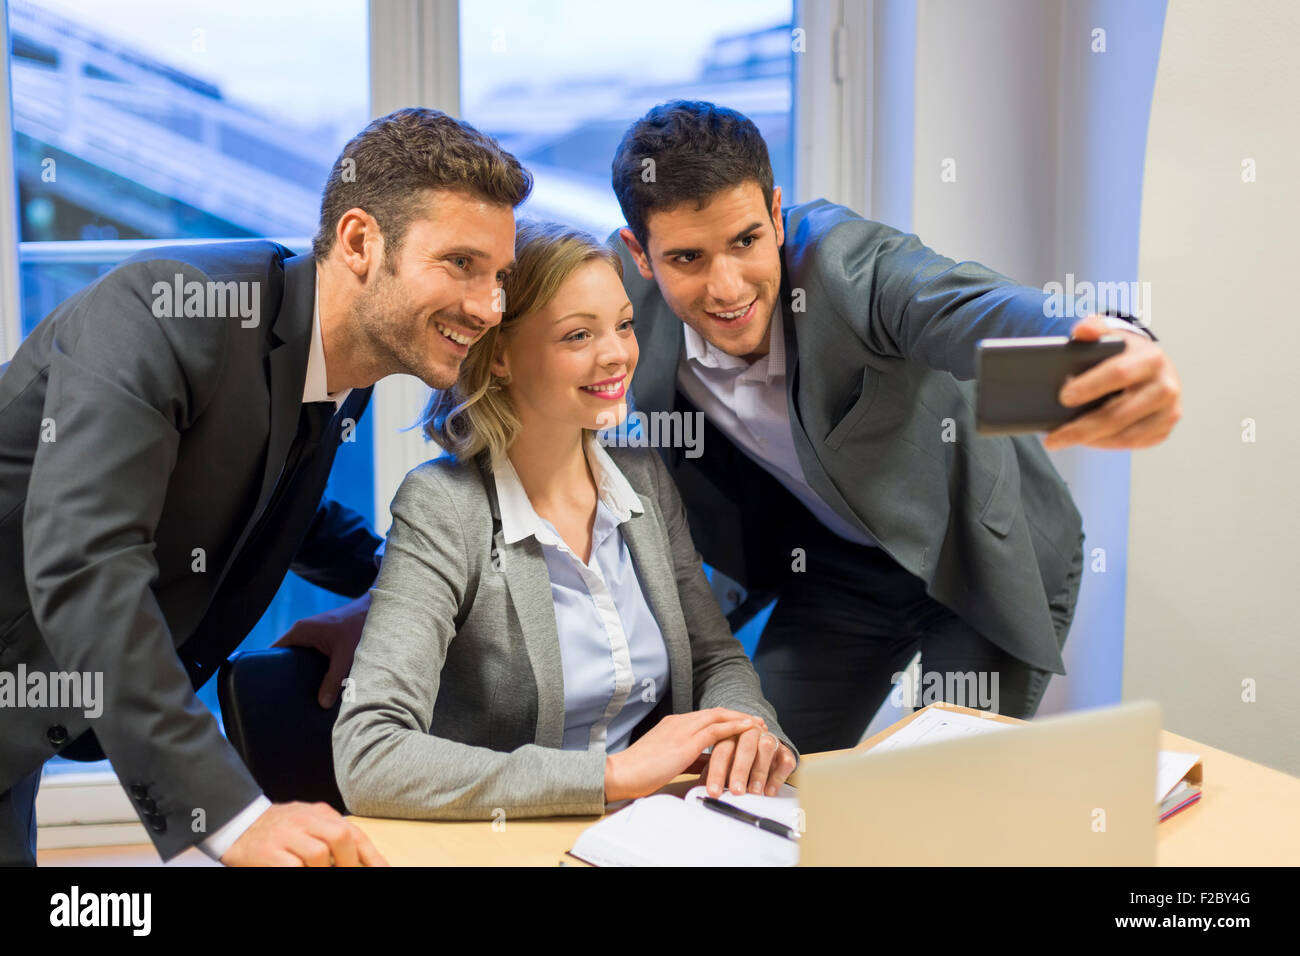 Retrato de tres empresarios sonriente tomando un selfie con el smartphone Foto de stock